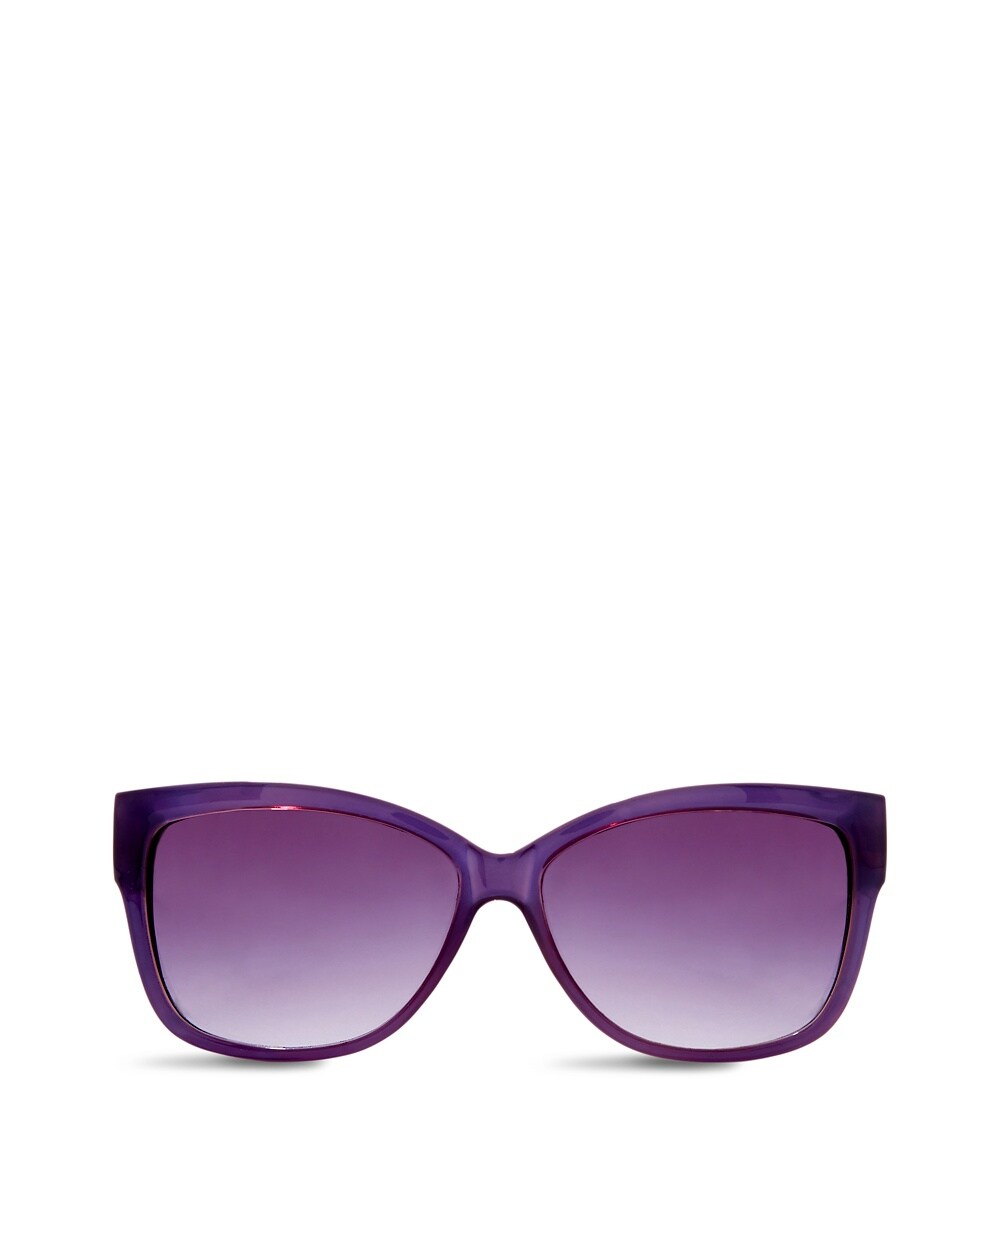 Olivia Rectangle Sunglasses